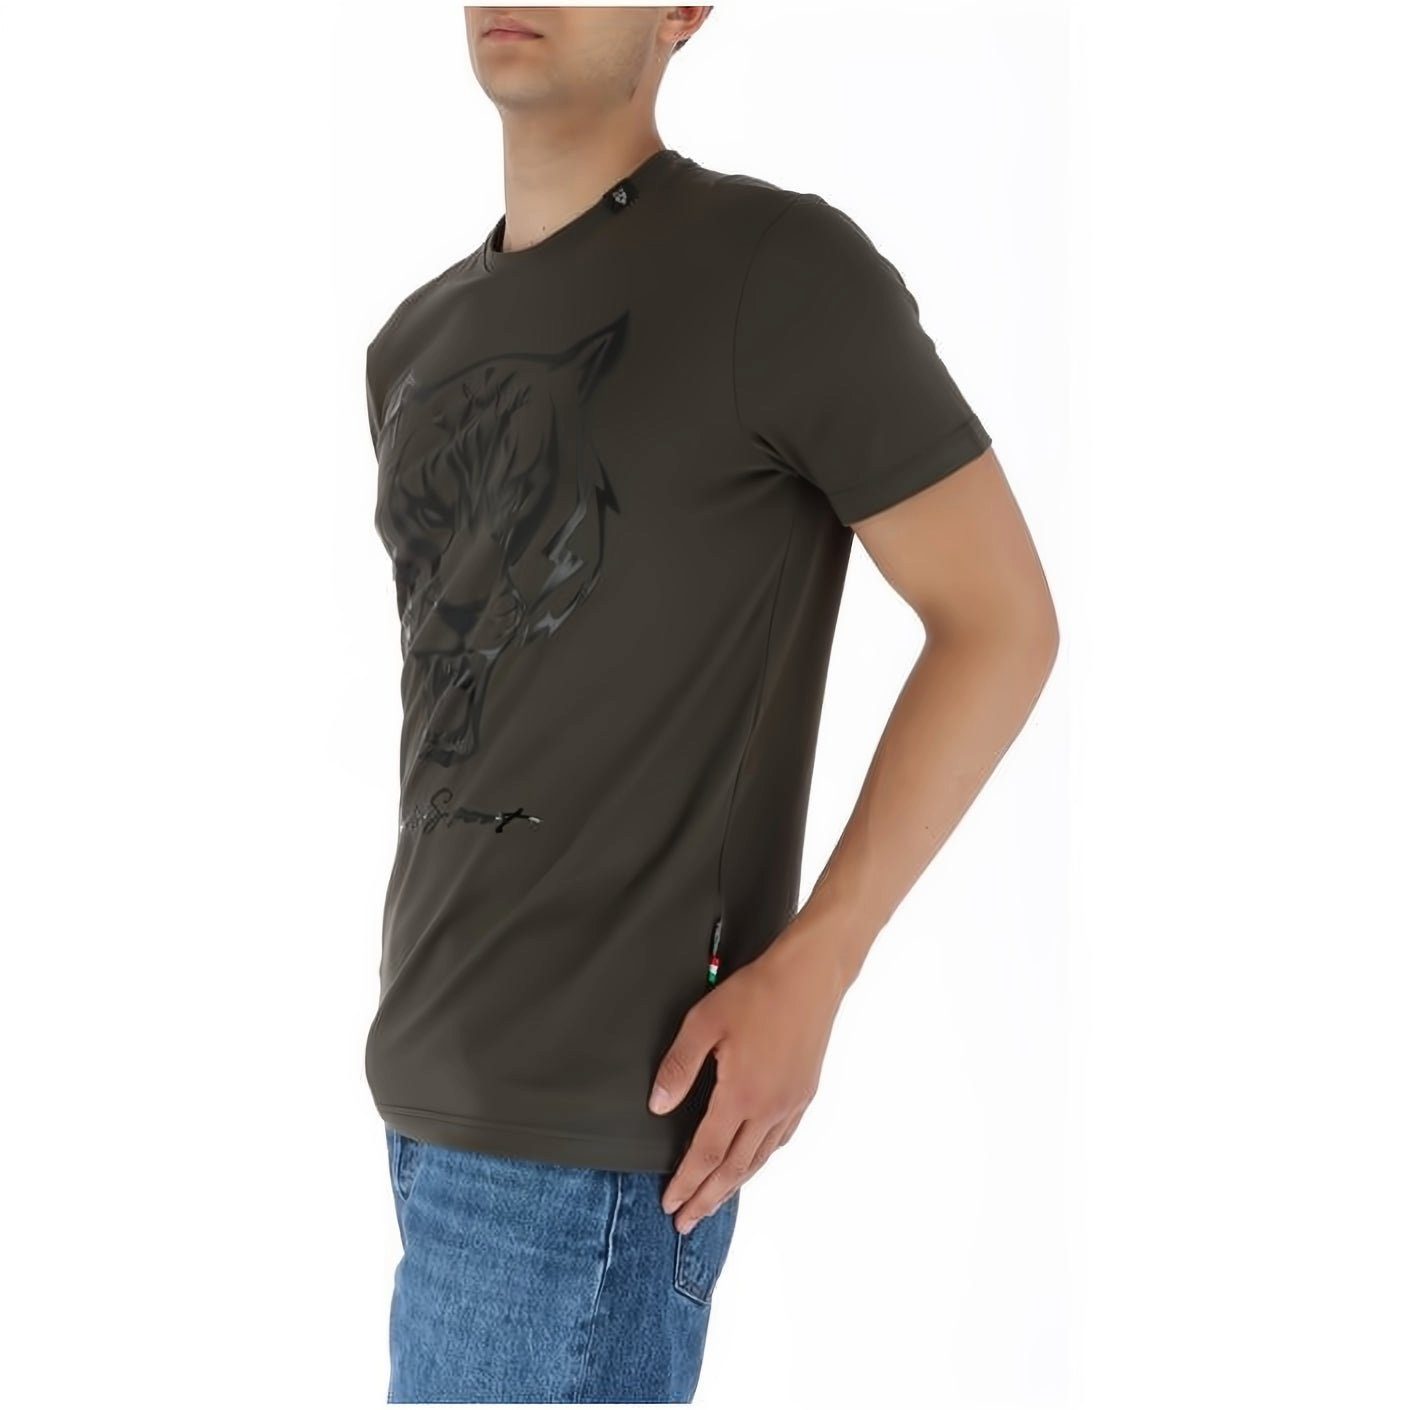 PLEIN SPORT Stylischer T-Shirt hoher ROUND Farbauswahl Look, Tragekomfort, vielfältige NECK